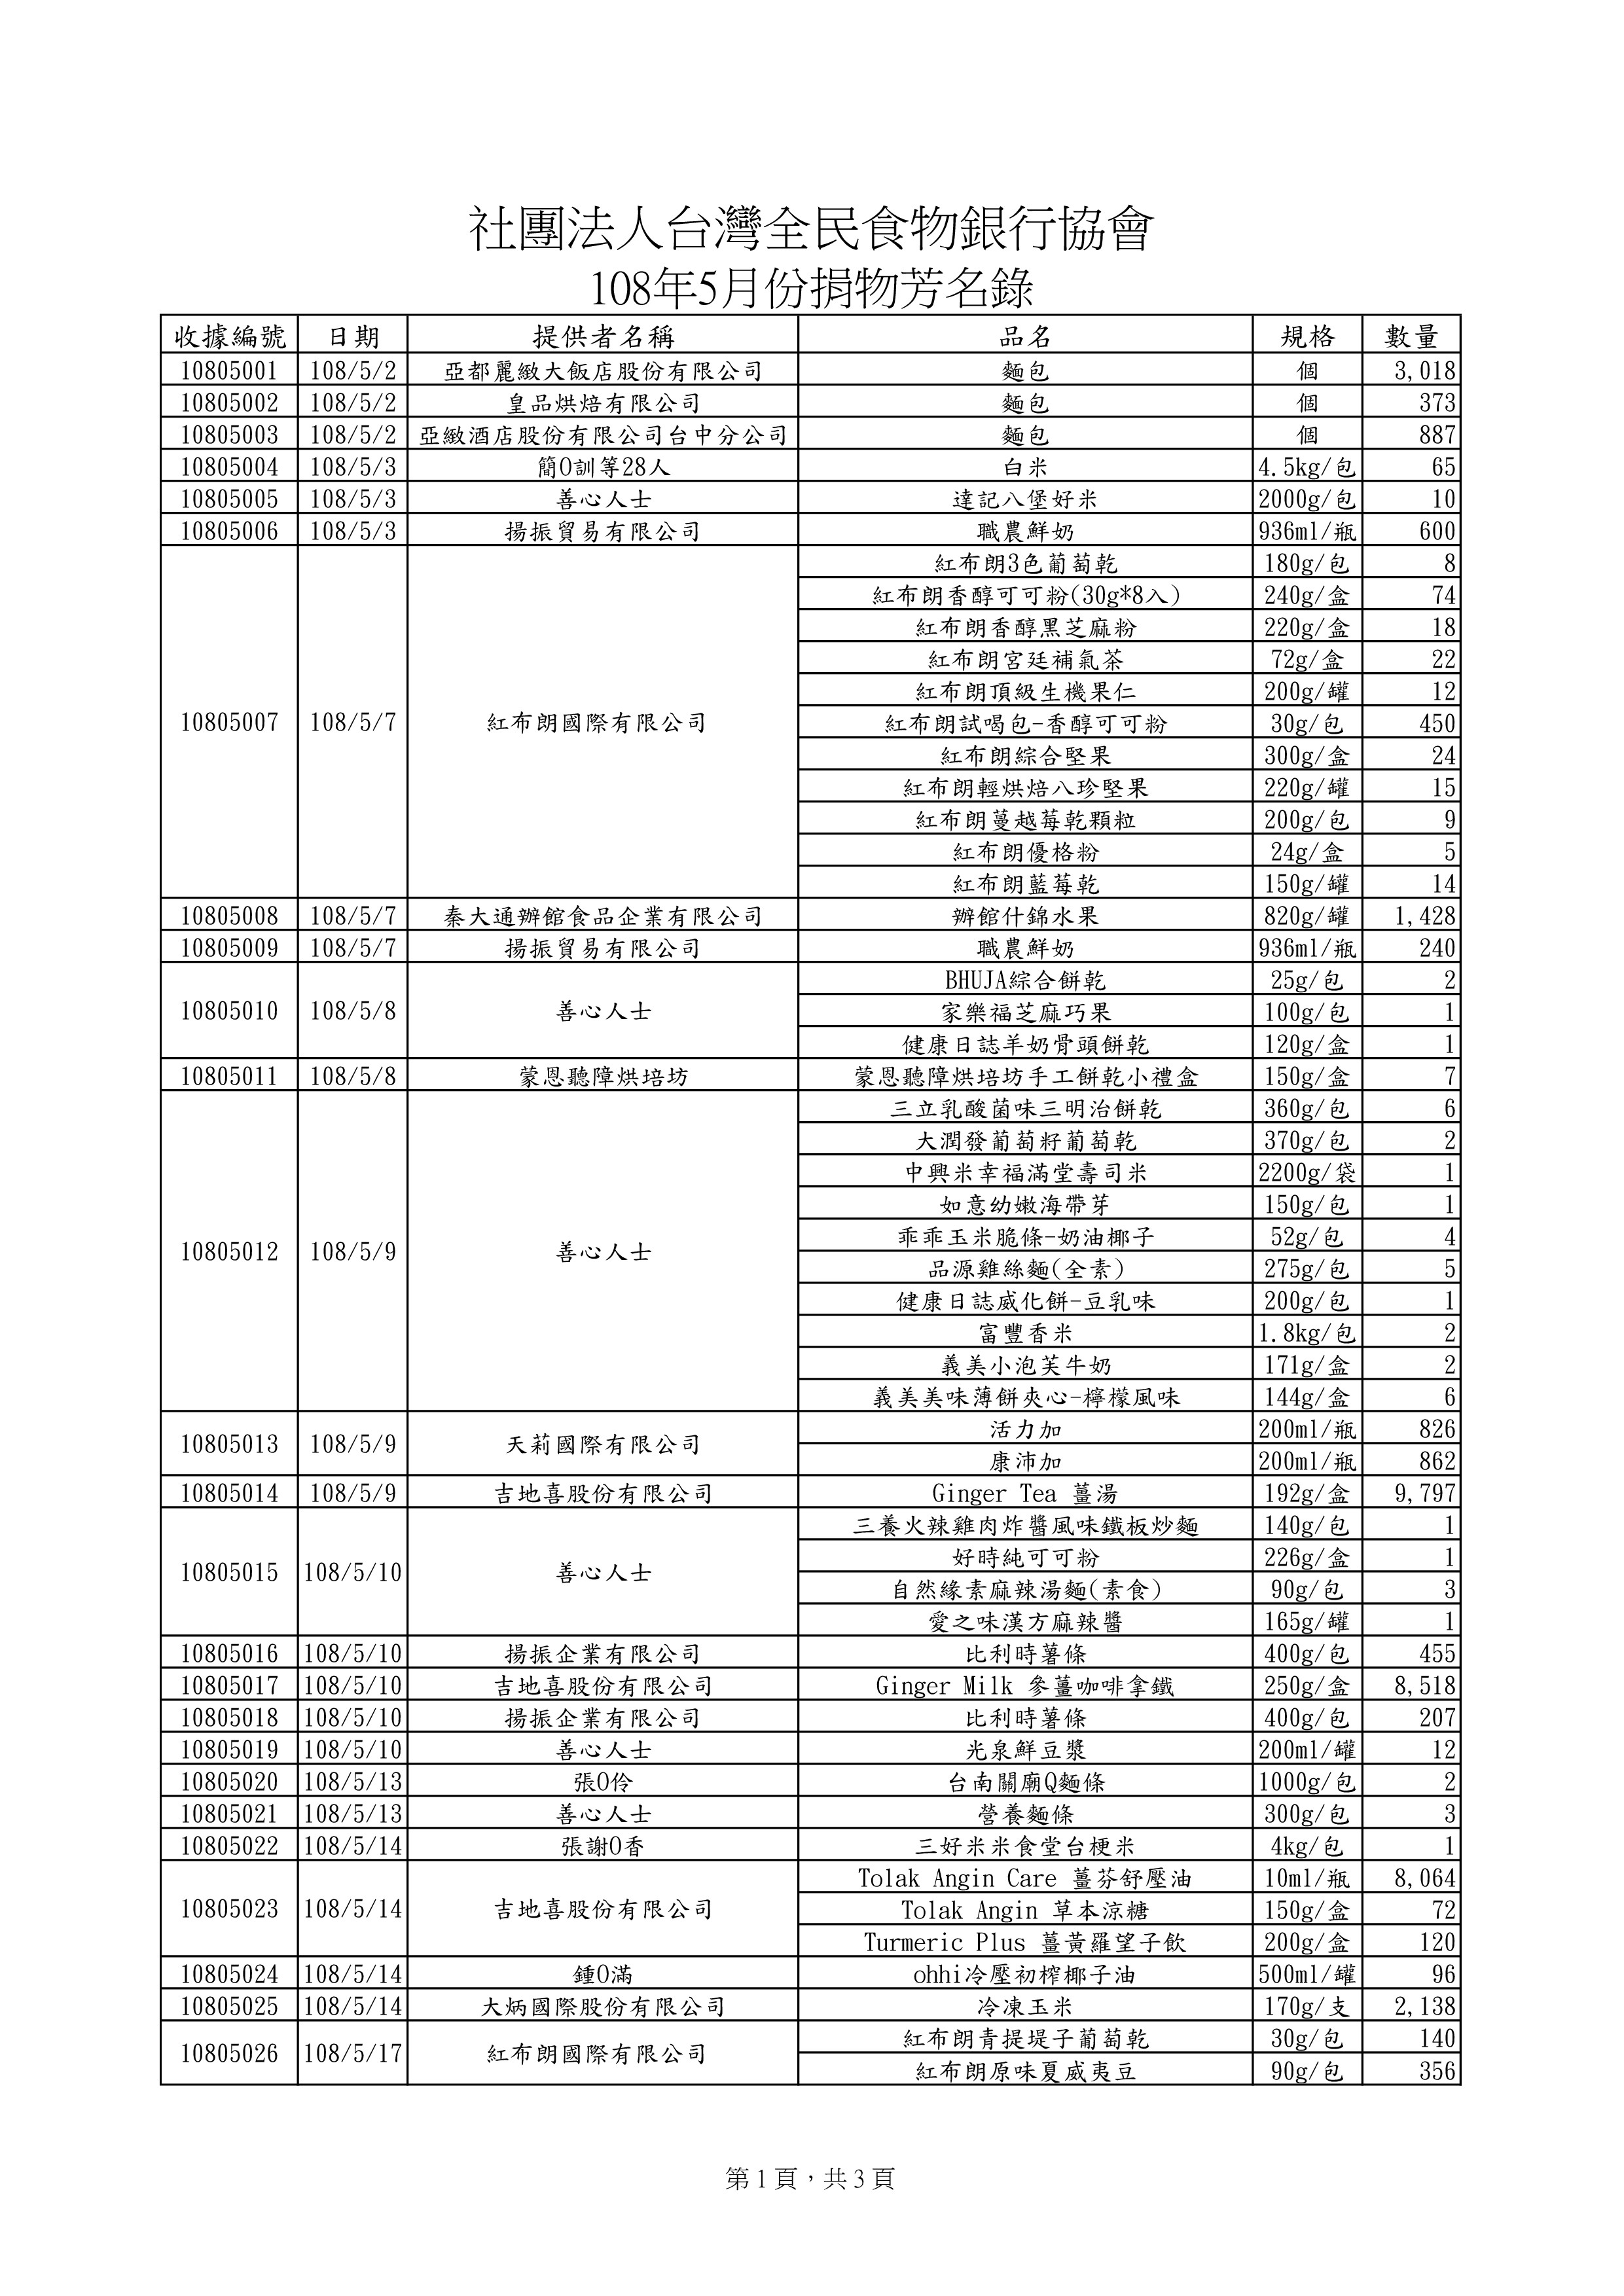 捐贈物品清單2019-5月份(系統報表)-0.jpg